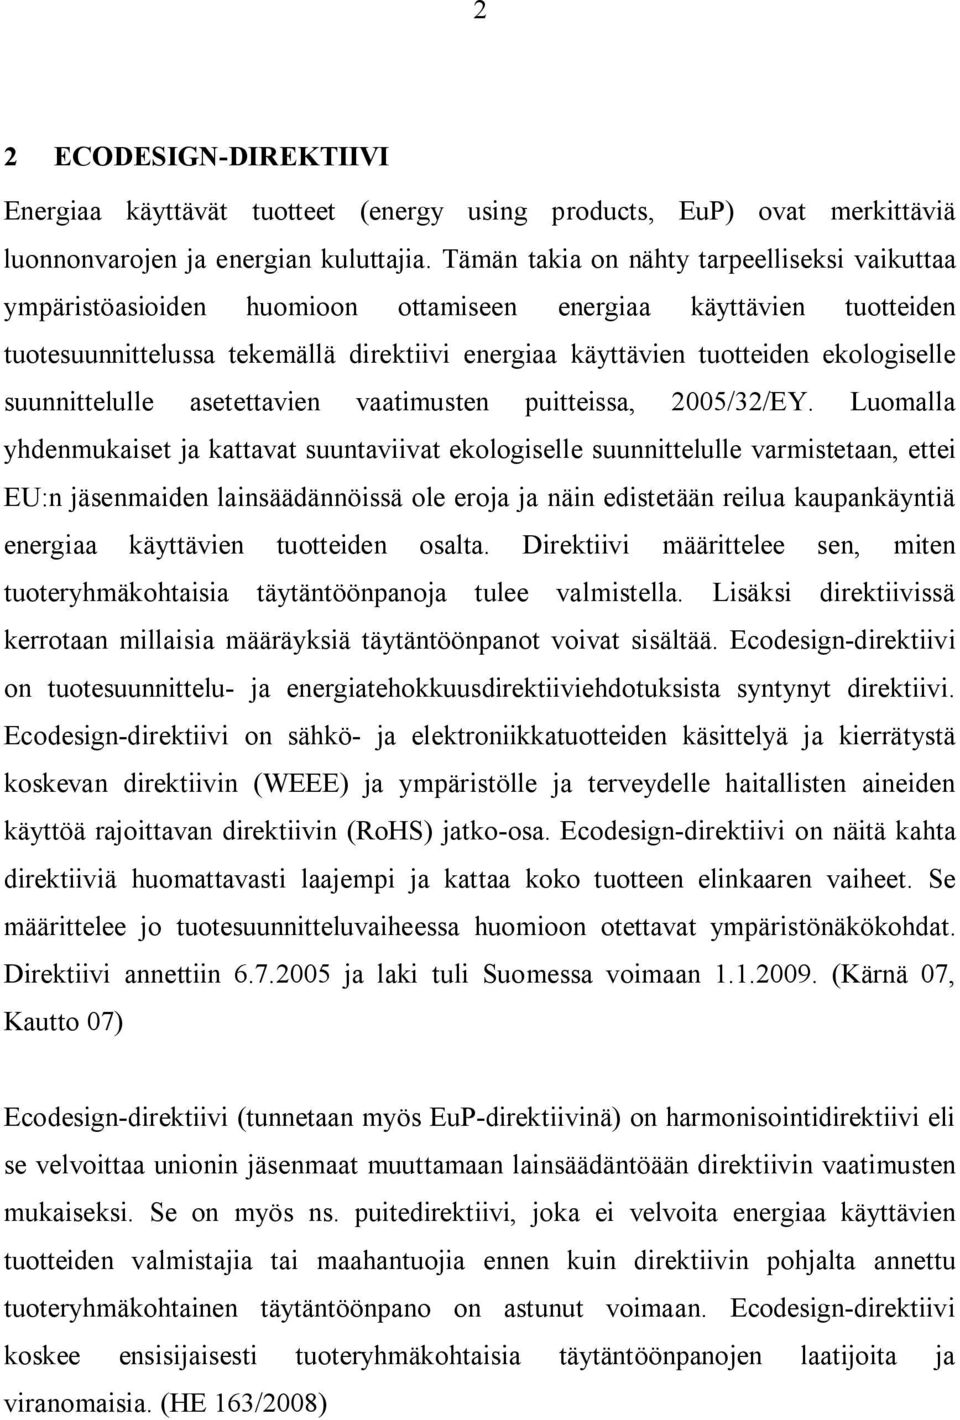 suunnittelulle asetettavien vaatimusten puitteissa, 2005/32/EY.